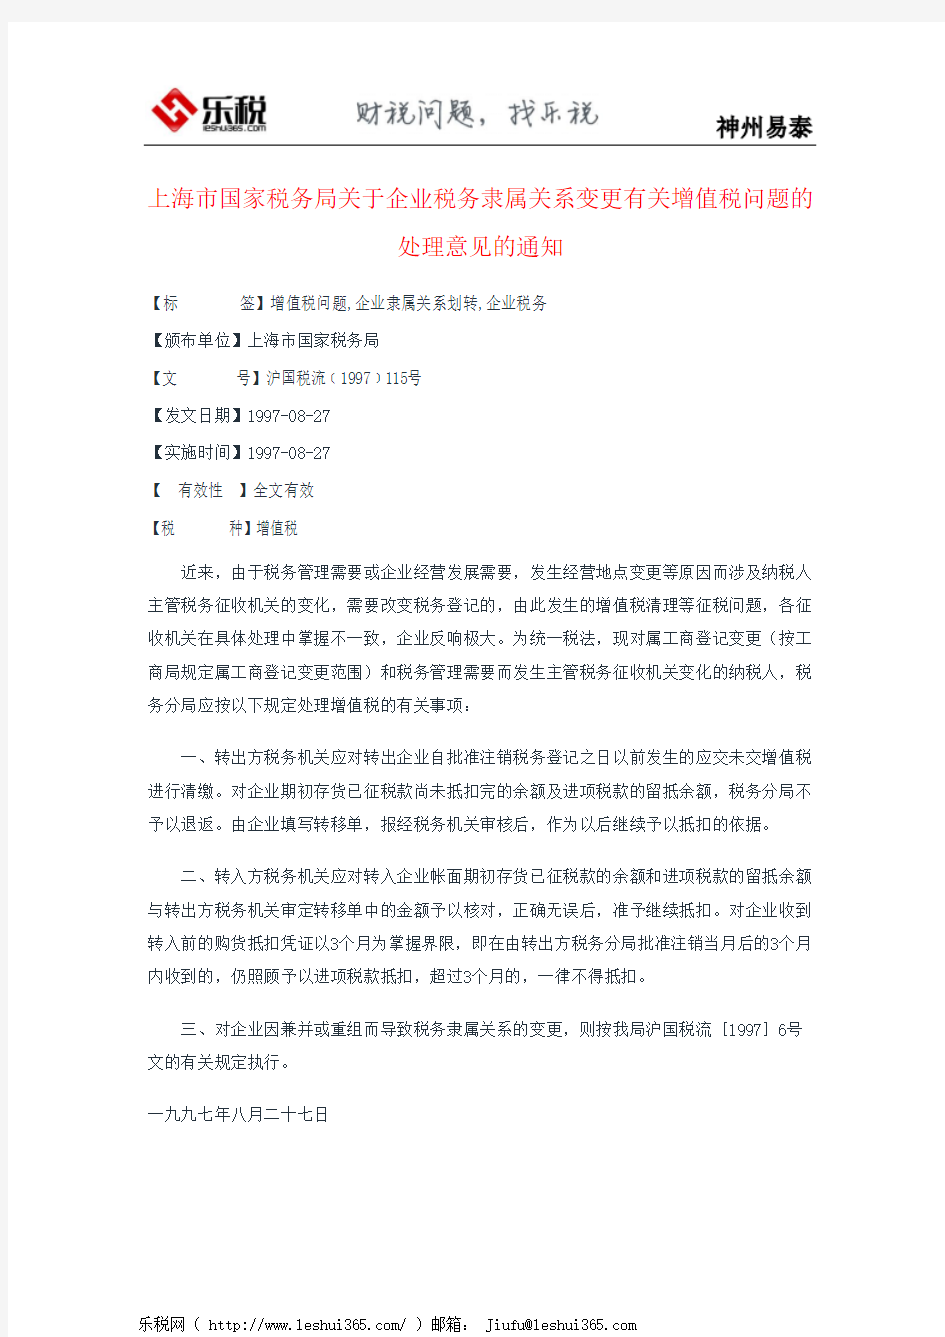 上海市国家税务局关于企业税务隶属关系变更有关增值税问题的处理